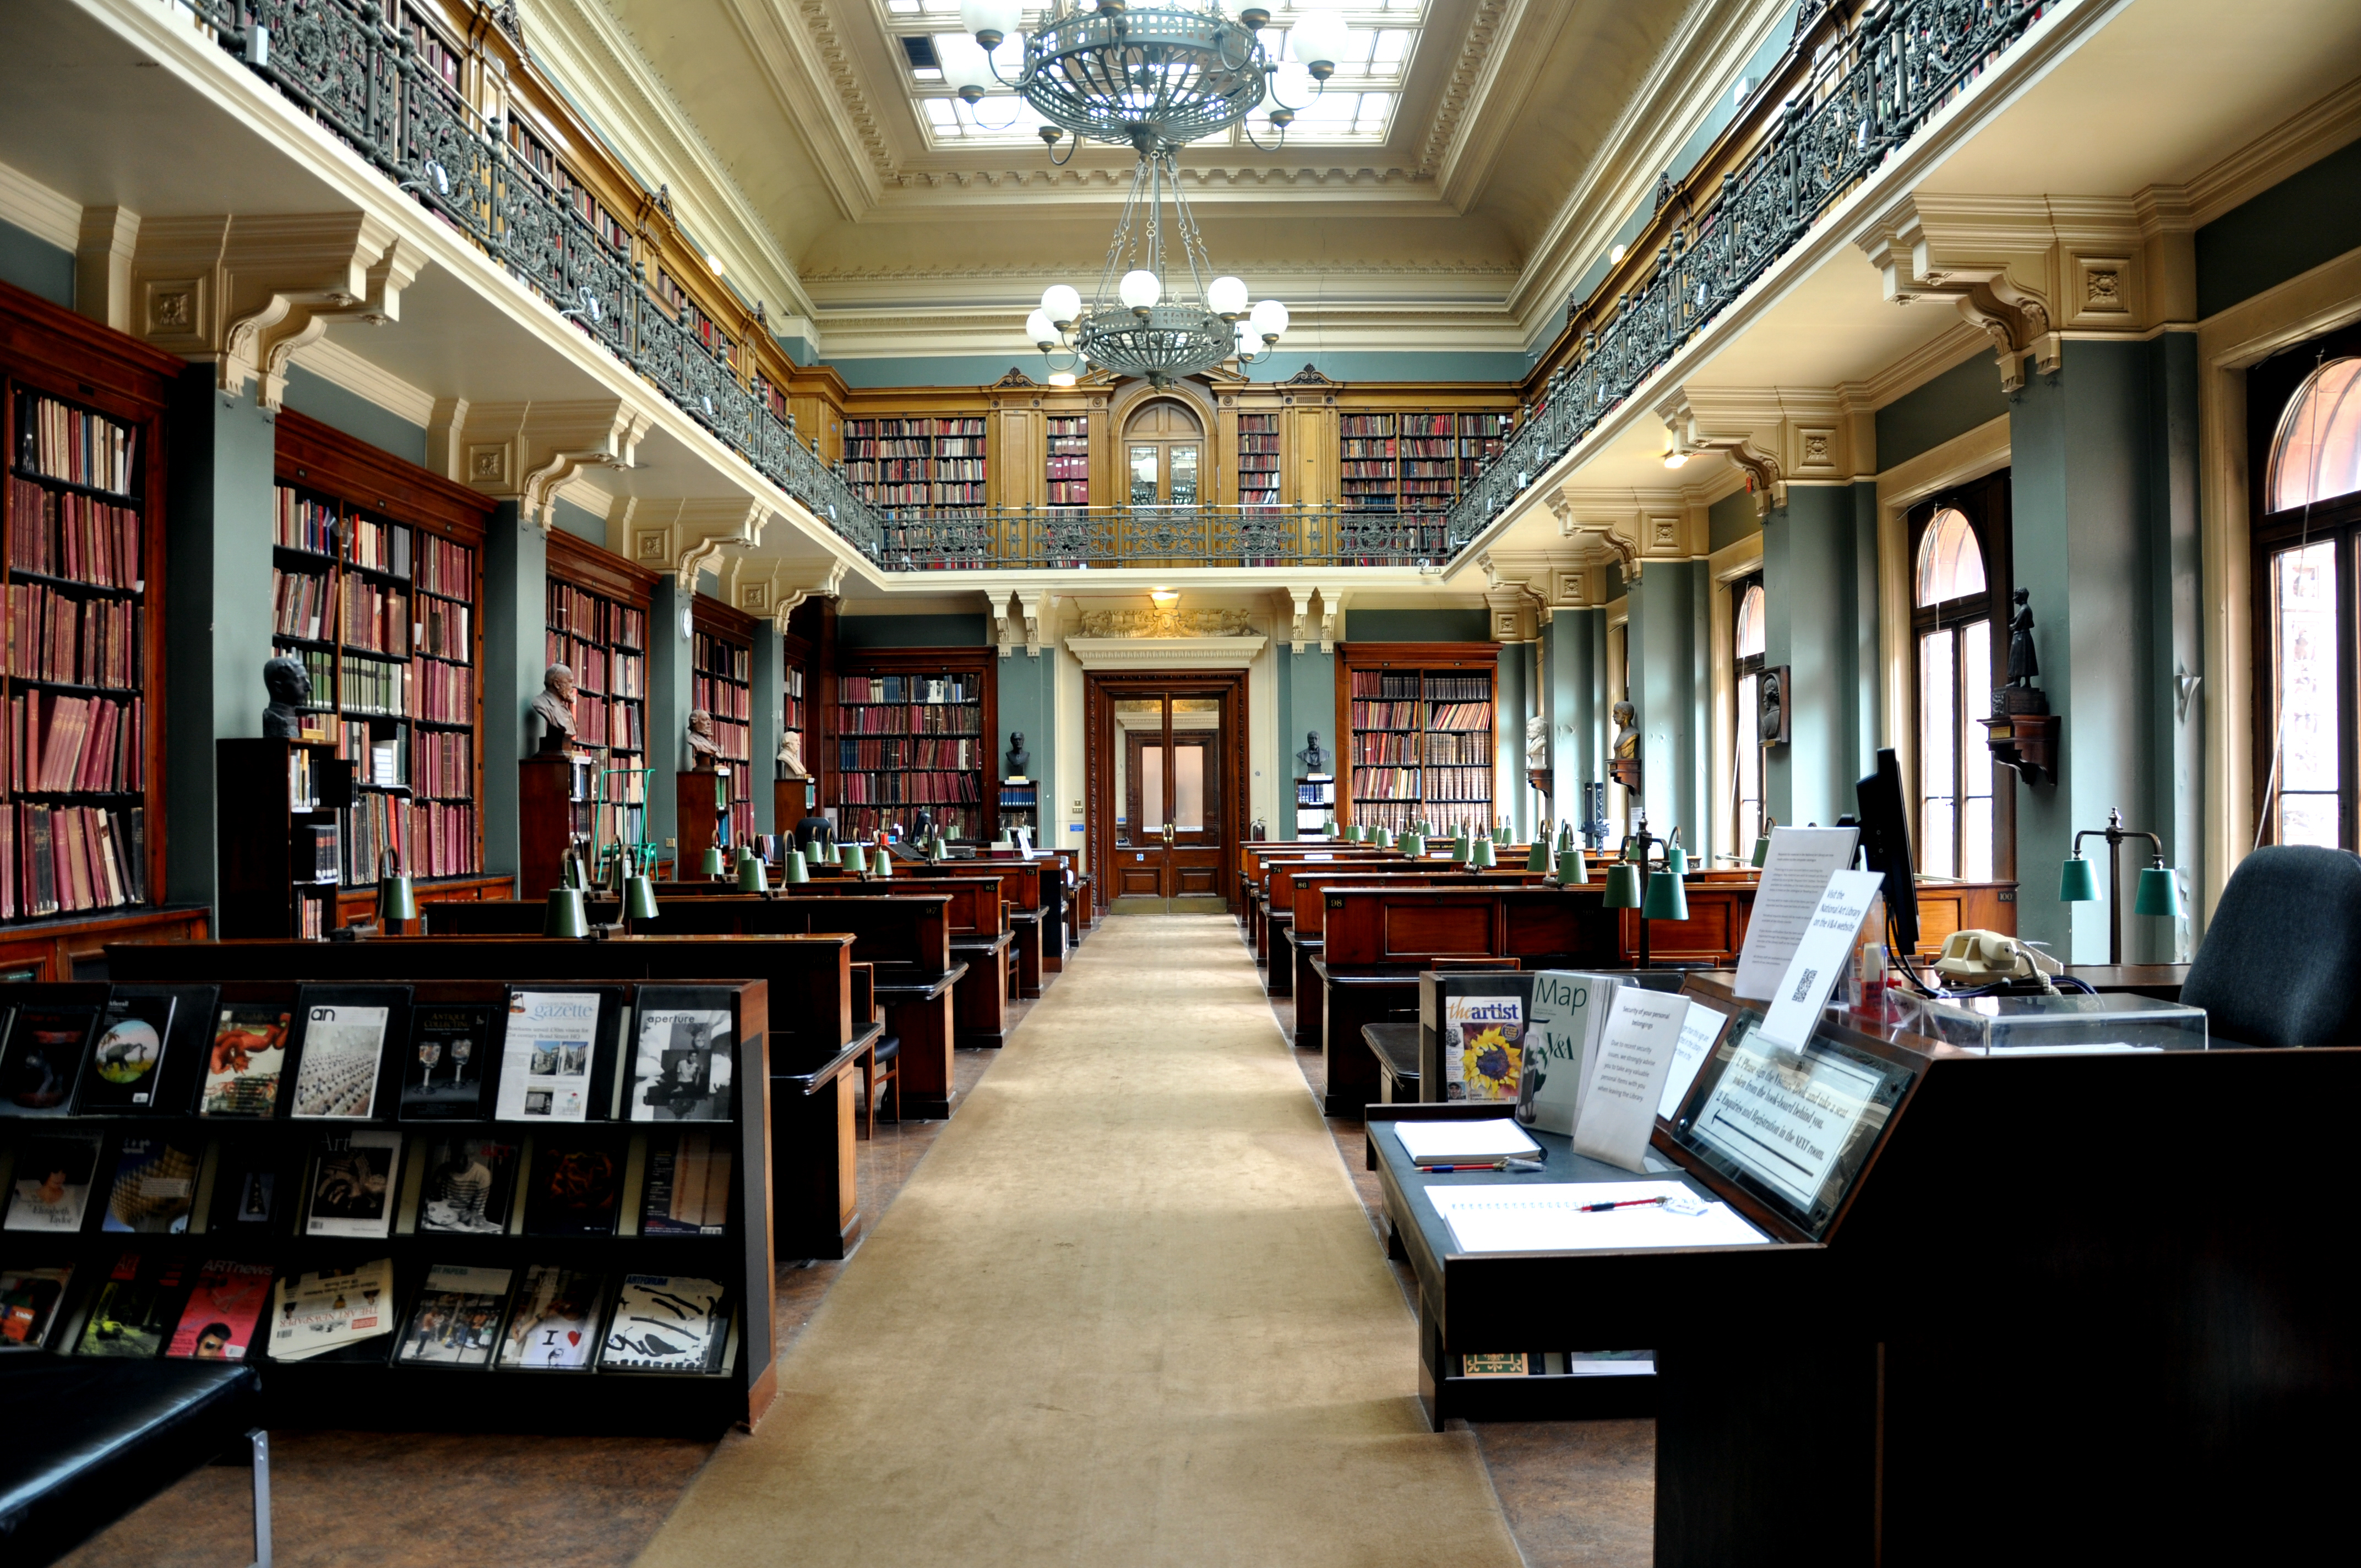 G library. Библиотека британского музея в Лондоне. Британская библиотека (British Library). Читальный зал британского музея. Национальная библиотека Лондона.